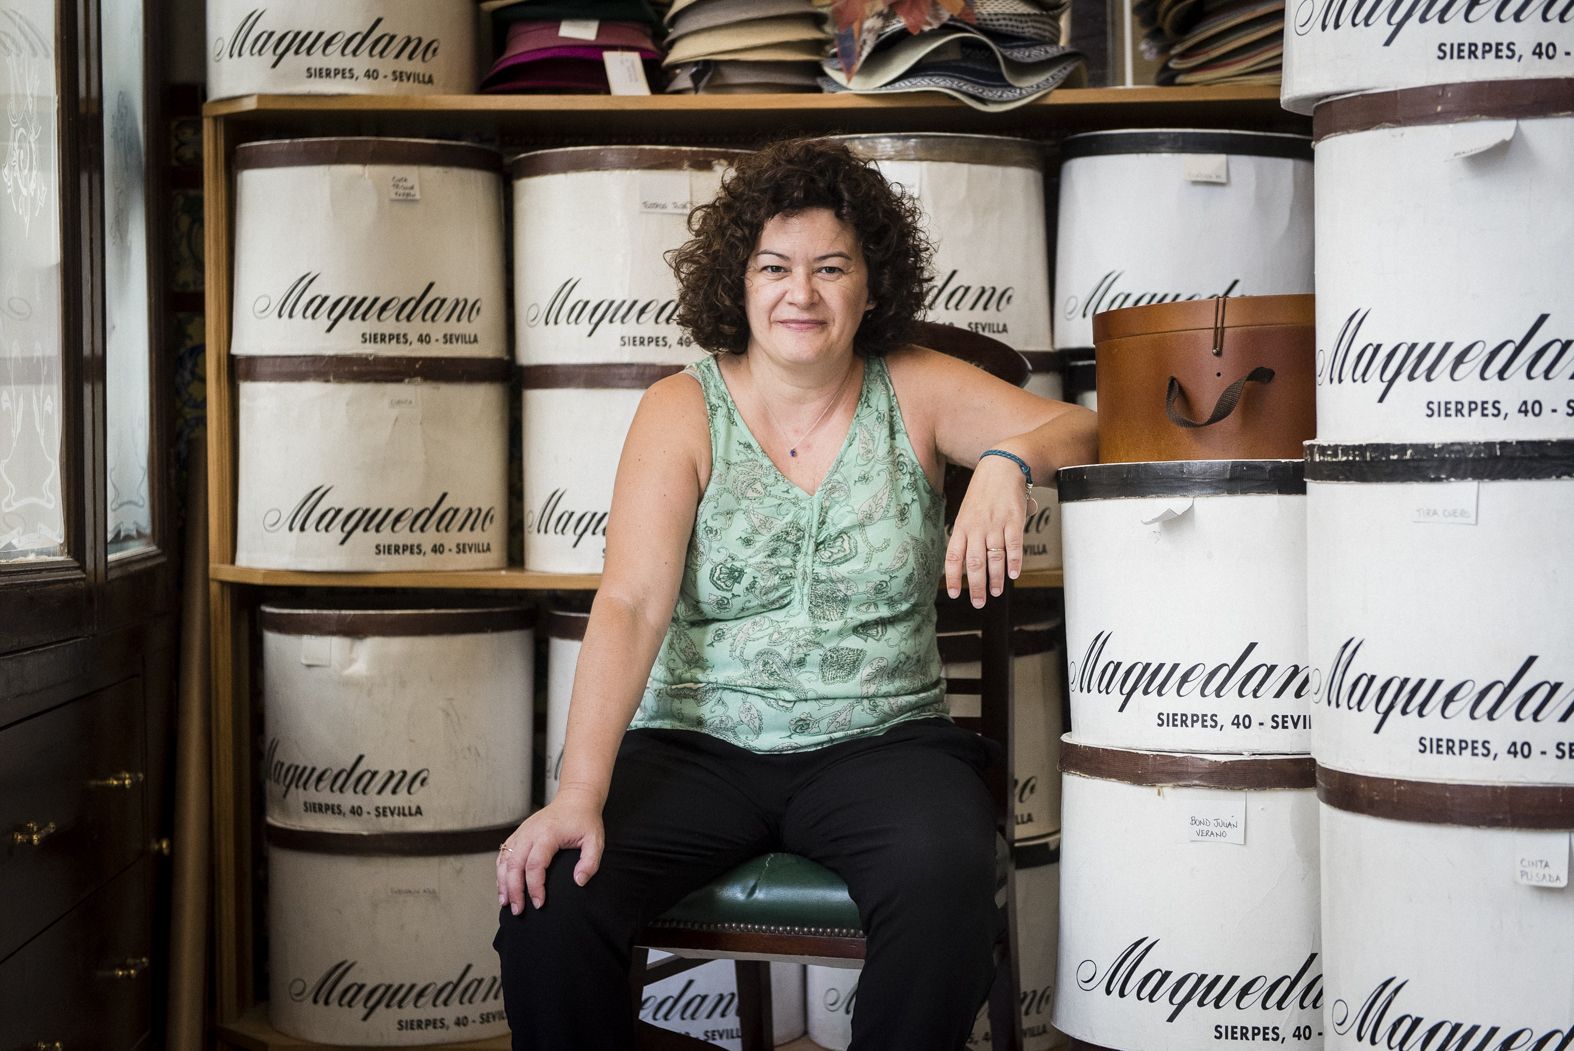 Cristina Vega, cuarta generación de Sombreros Maquedano, comercio con 125 años de historia en la sevillana calle Sierpes.